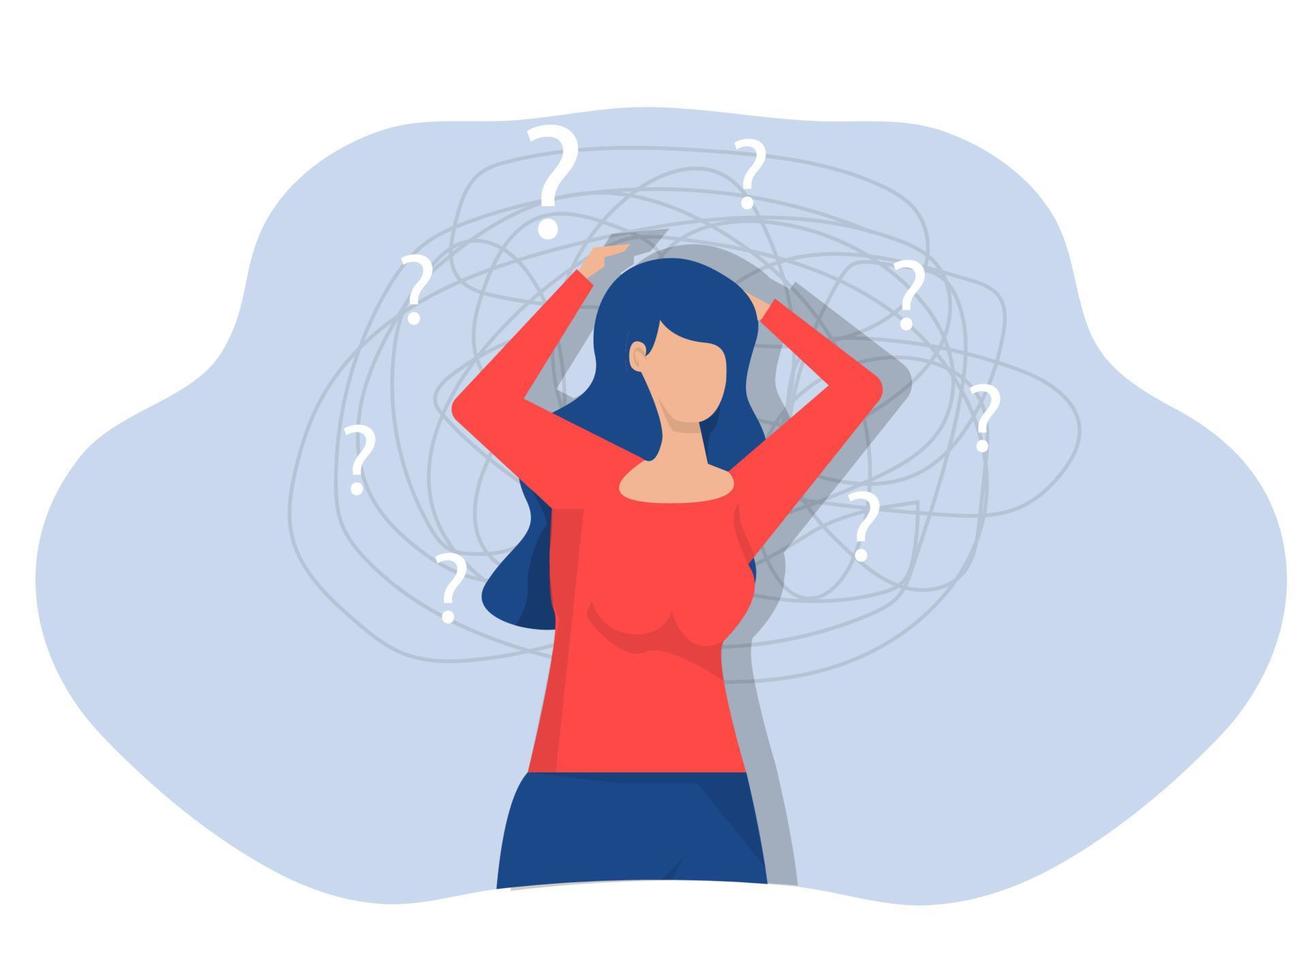 kvinna lider av tvångstankar huvudvärk olösta problem psykiska trauman depression. mental stress panik sinnesstörning illustration vektor